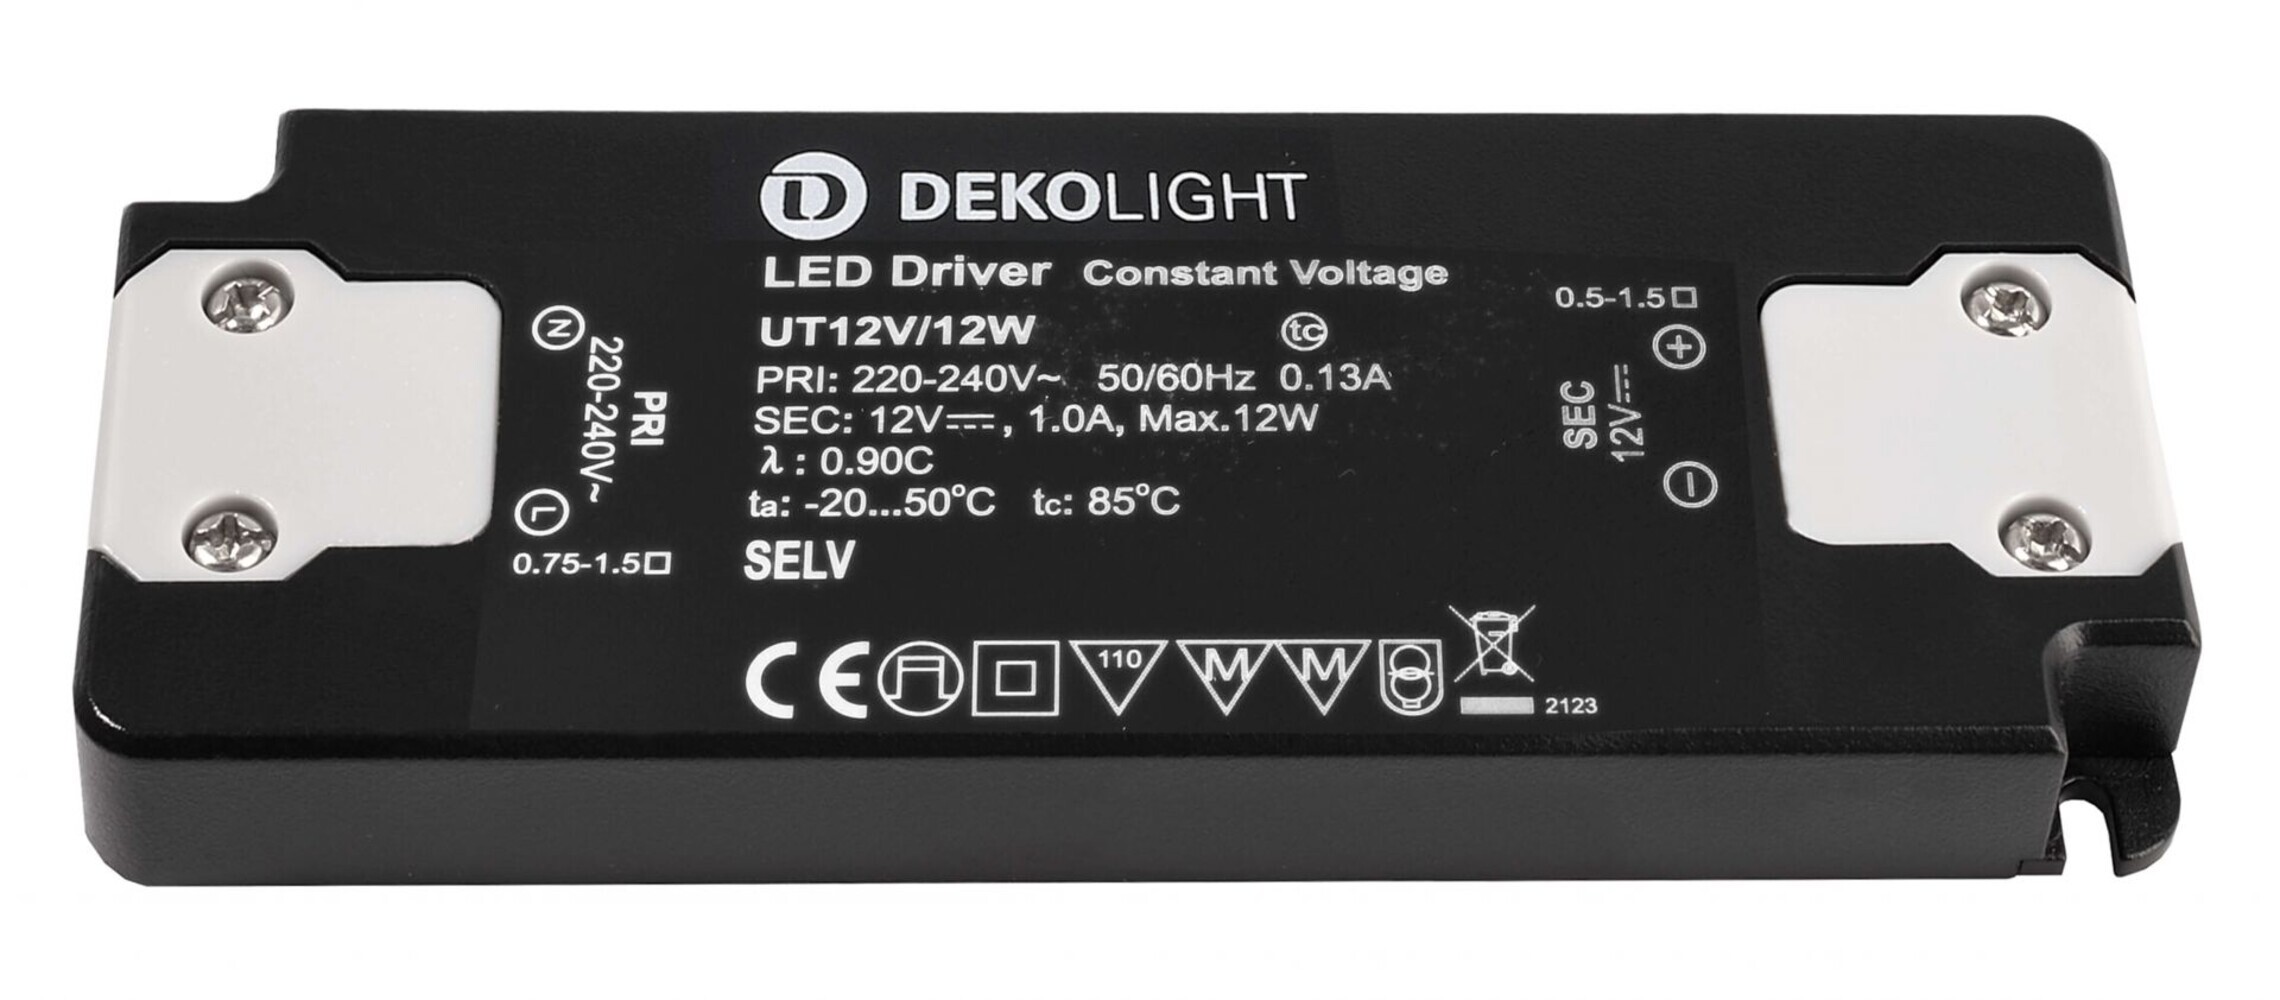 Detaillierte Ansicht des LED Netzgeräts FLAT CV UT12V 12W von Deko-Light: die perfekte Lösung für eine stets konstante Spannung